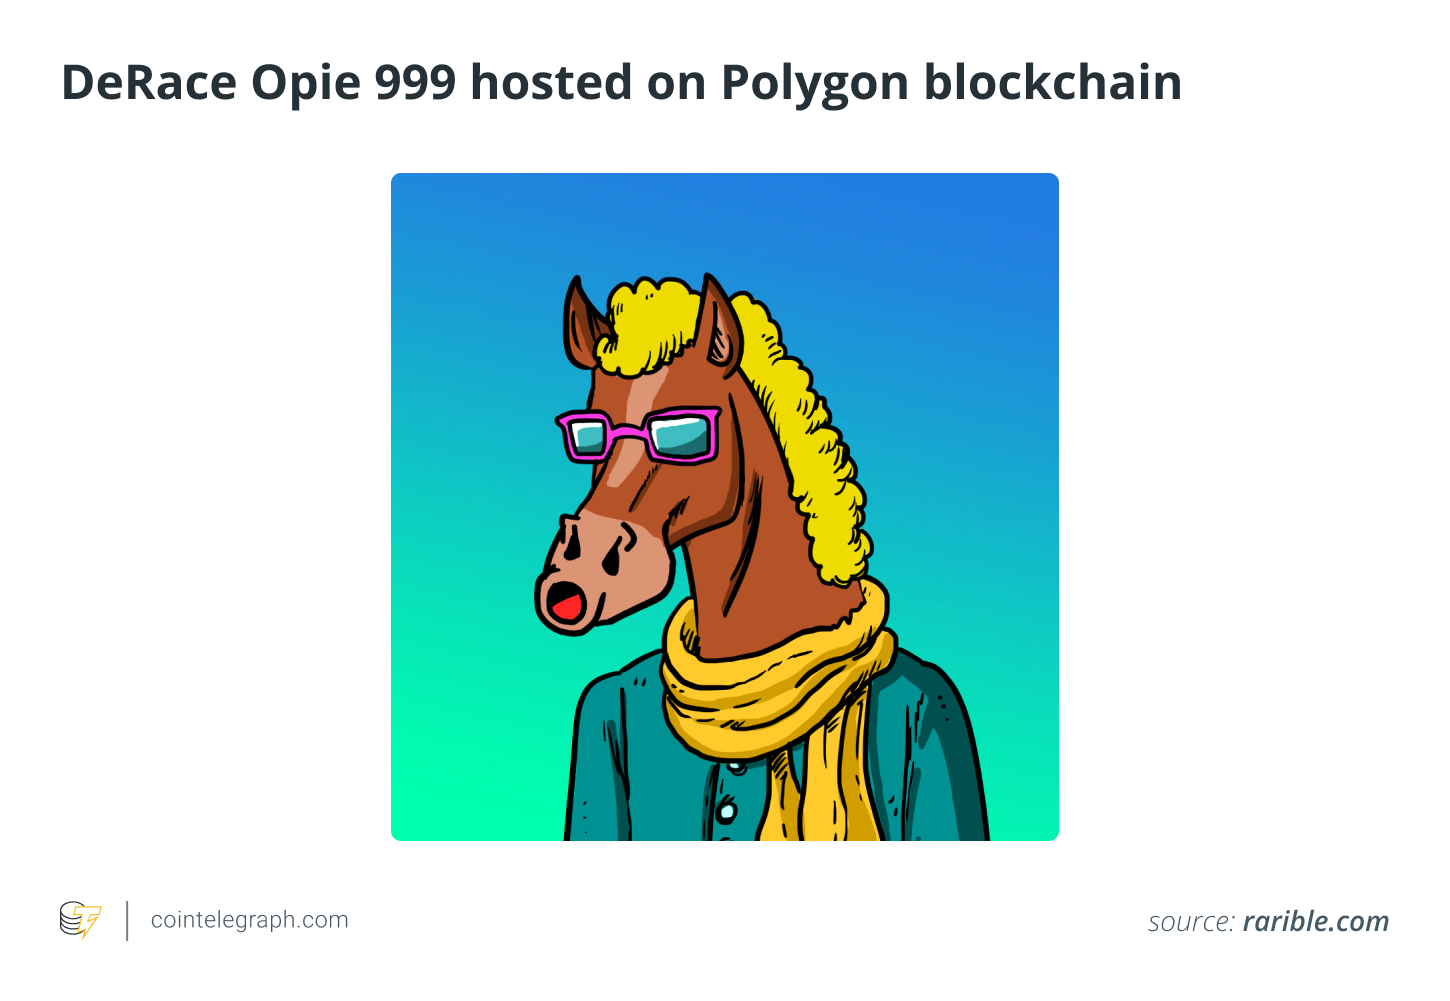 DeRace Opie 999 alojado en la cadena de bloques Polygon